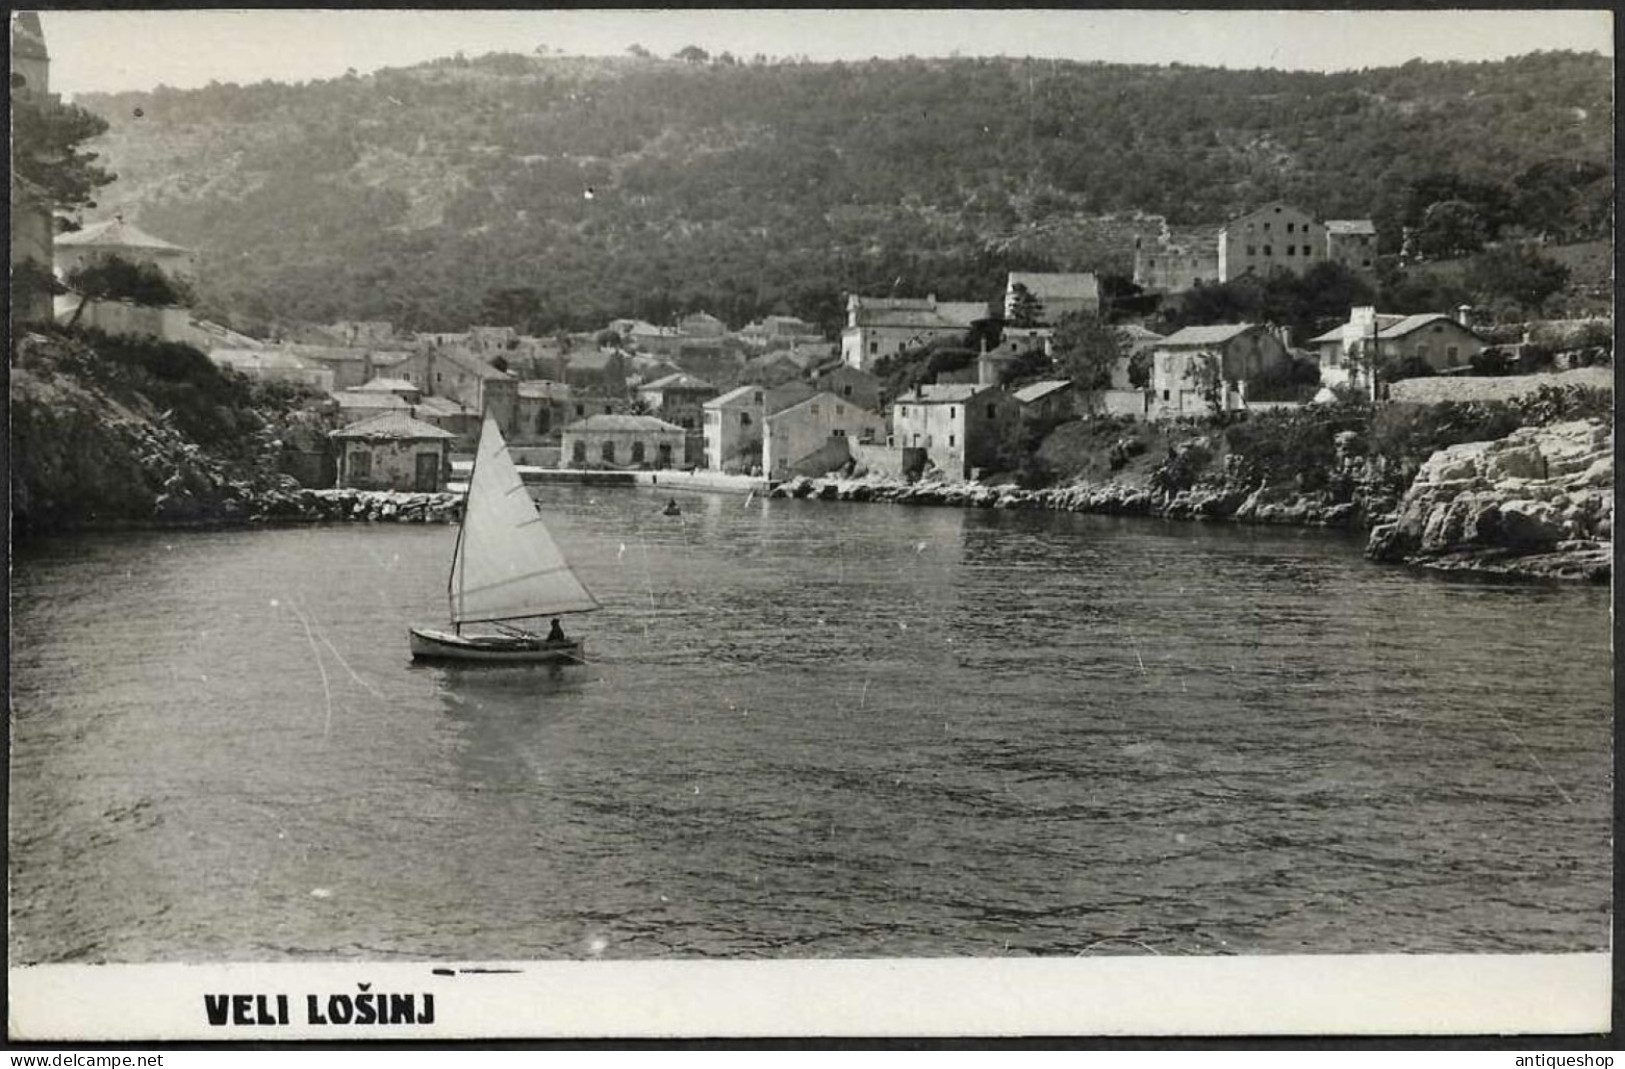 Croatia-----Veli Losinj (Lussingrande)-----old Postcard - Kroatien